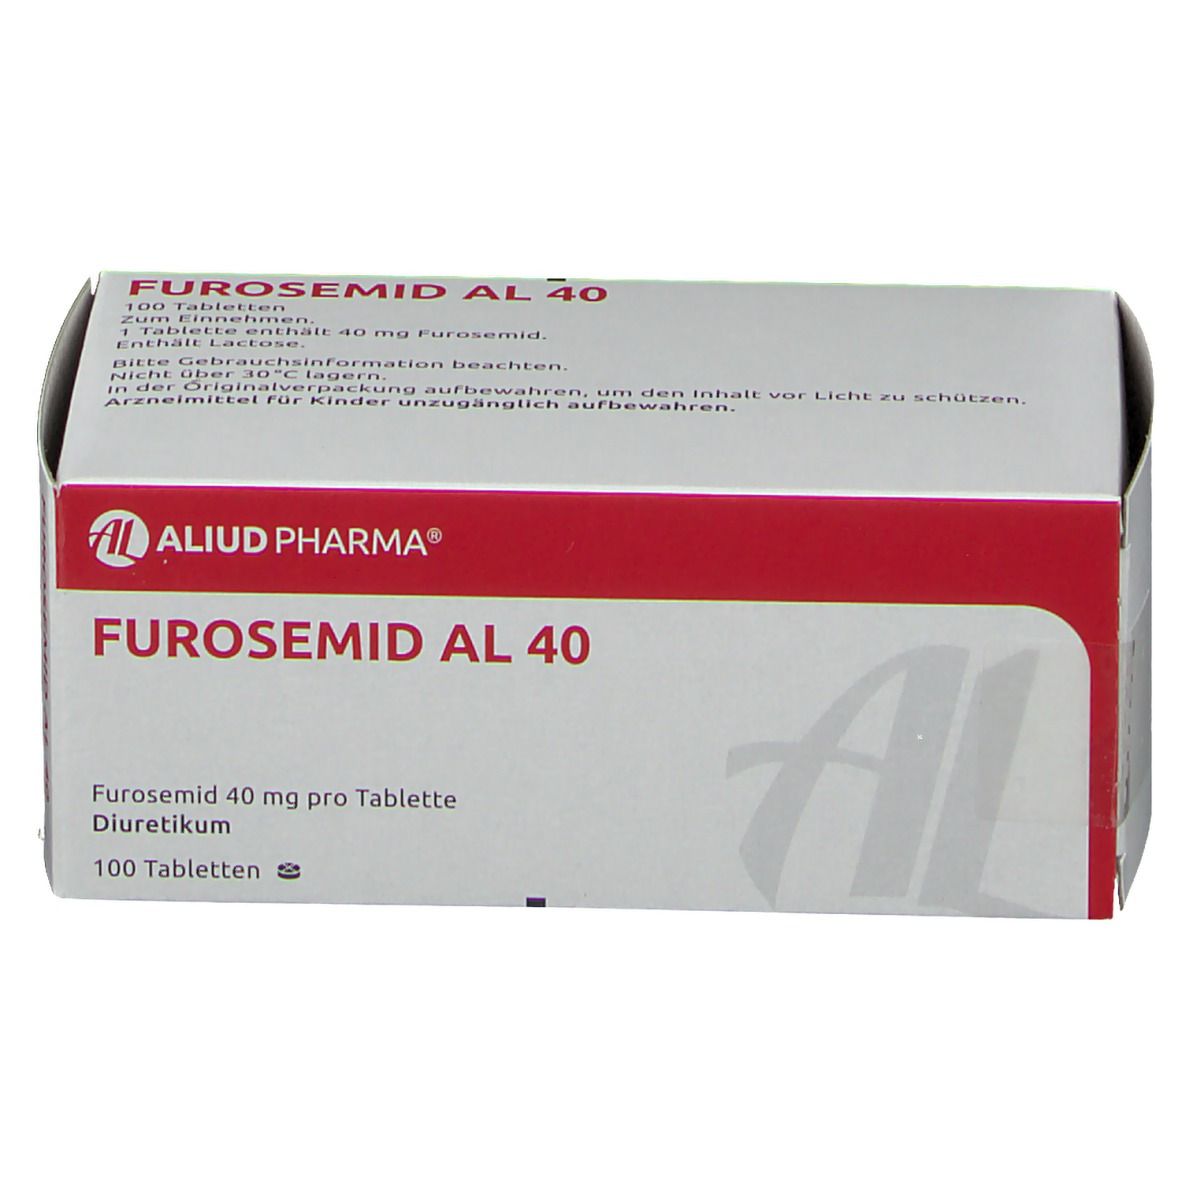 Furosemid AL 40